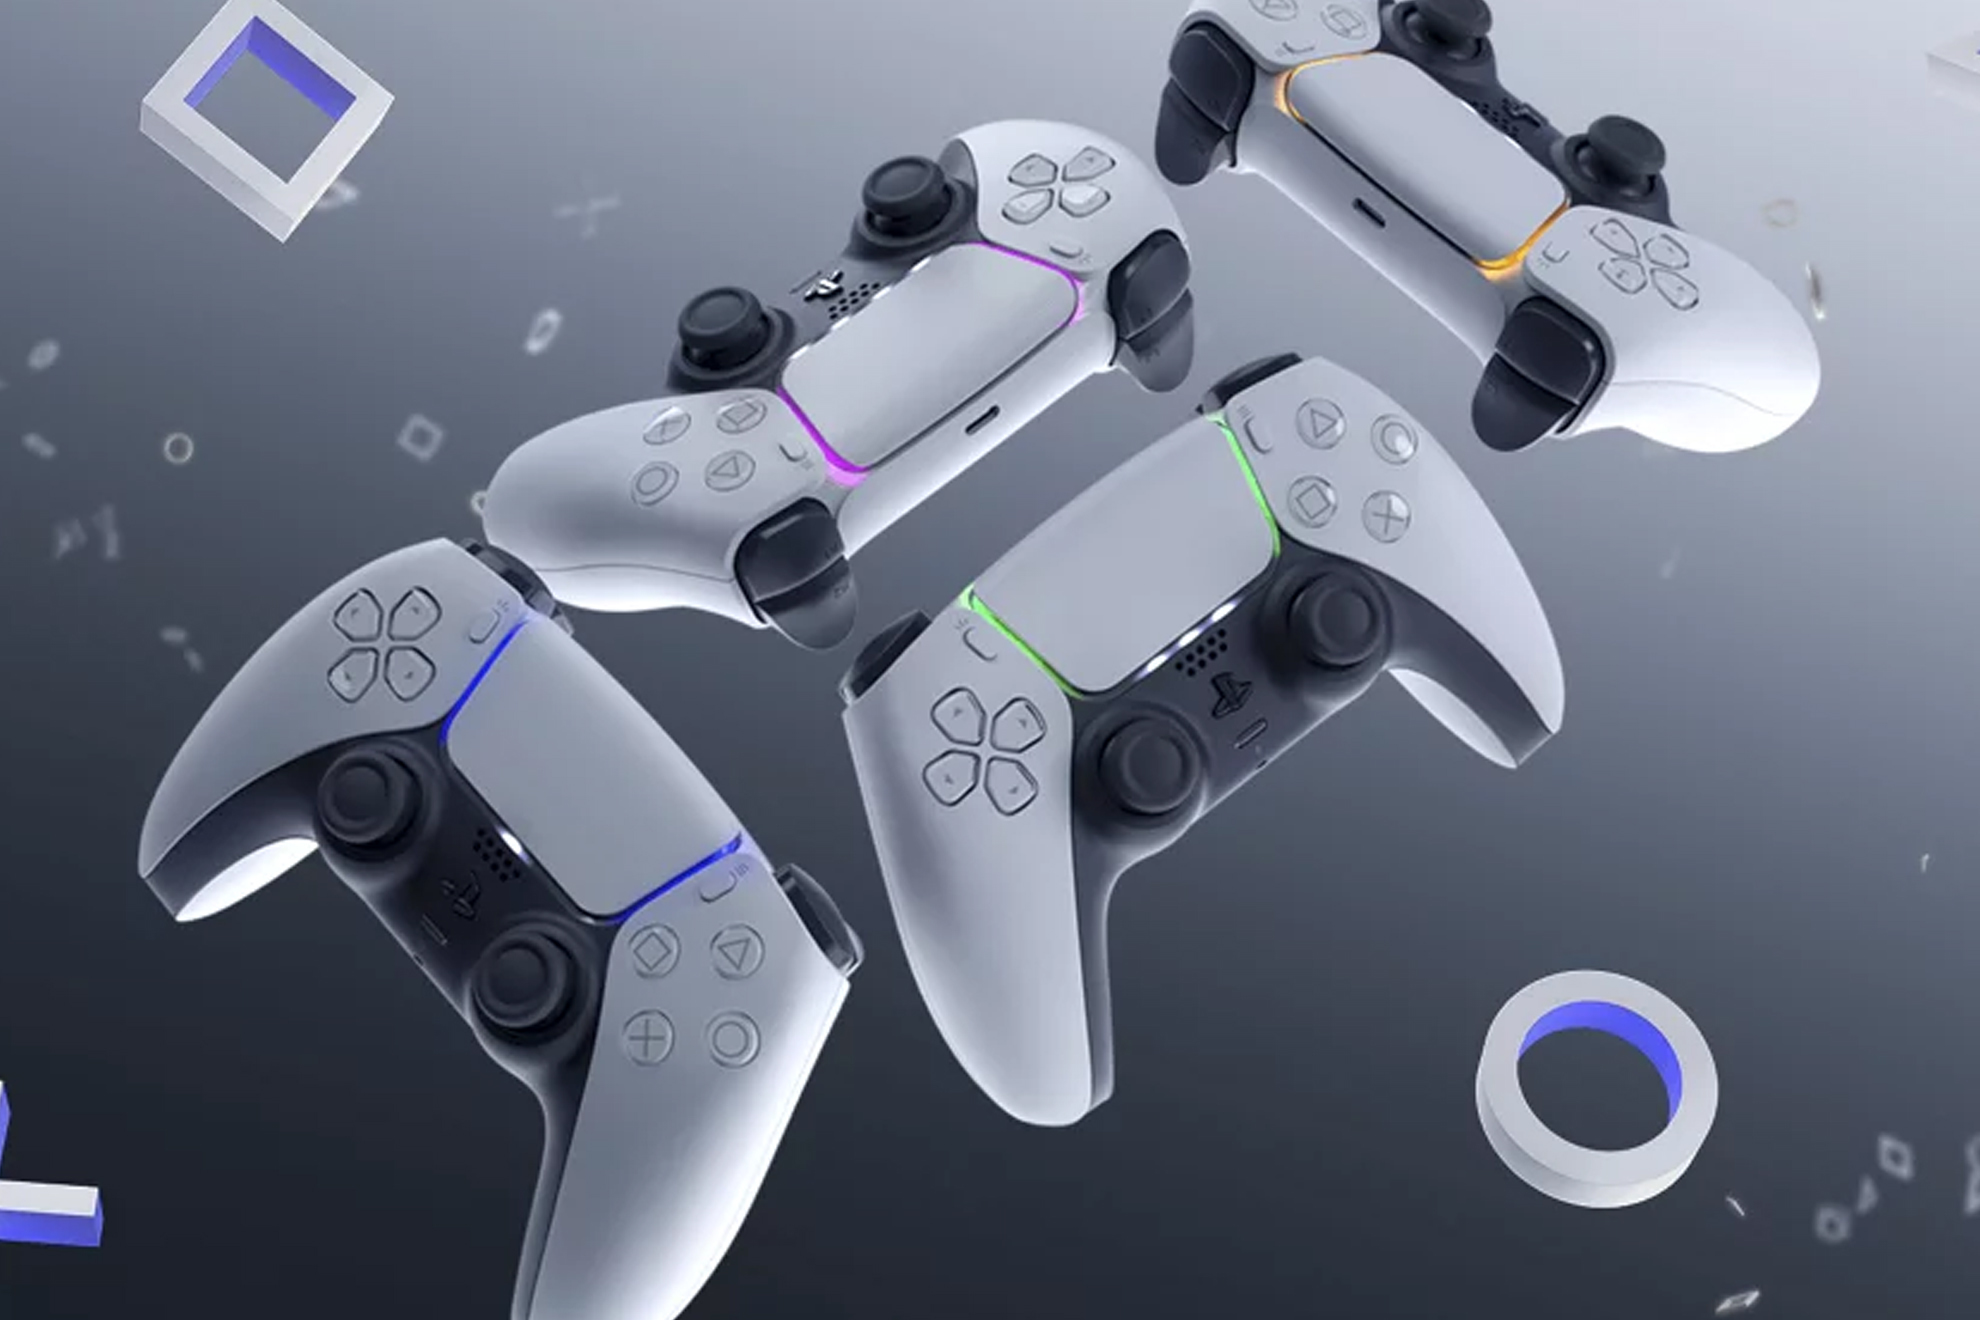 El futuro de PS5 tambin pasa por una nueva e increble interfaz que llevamos aos pidiendo